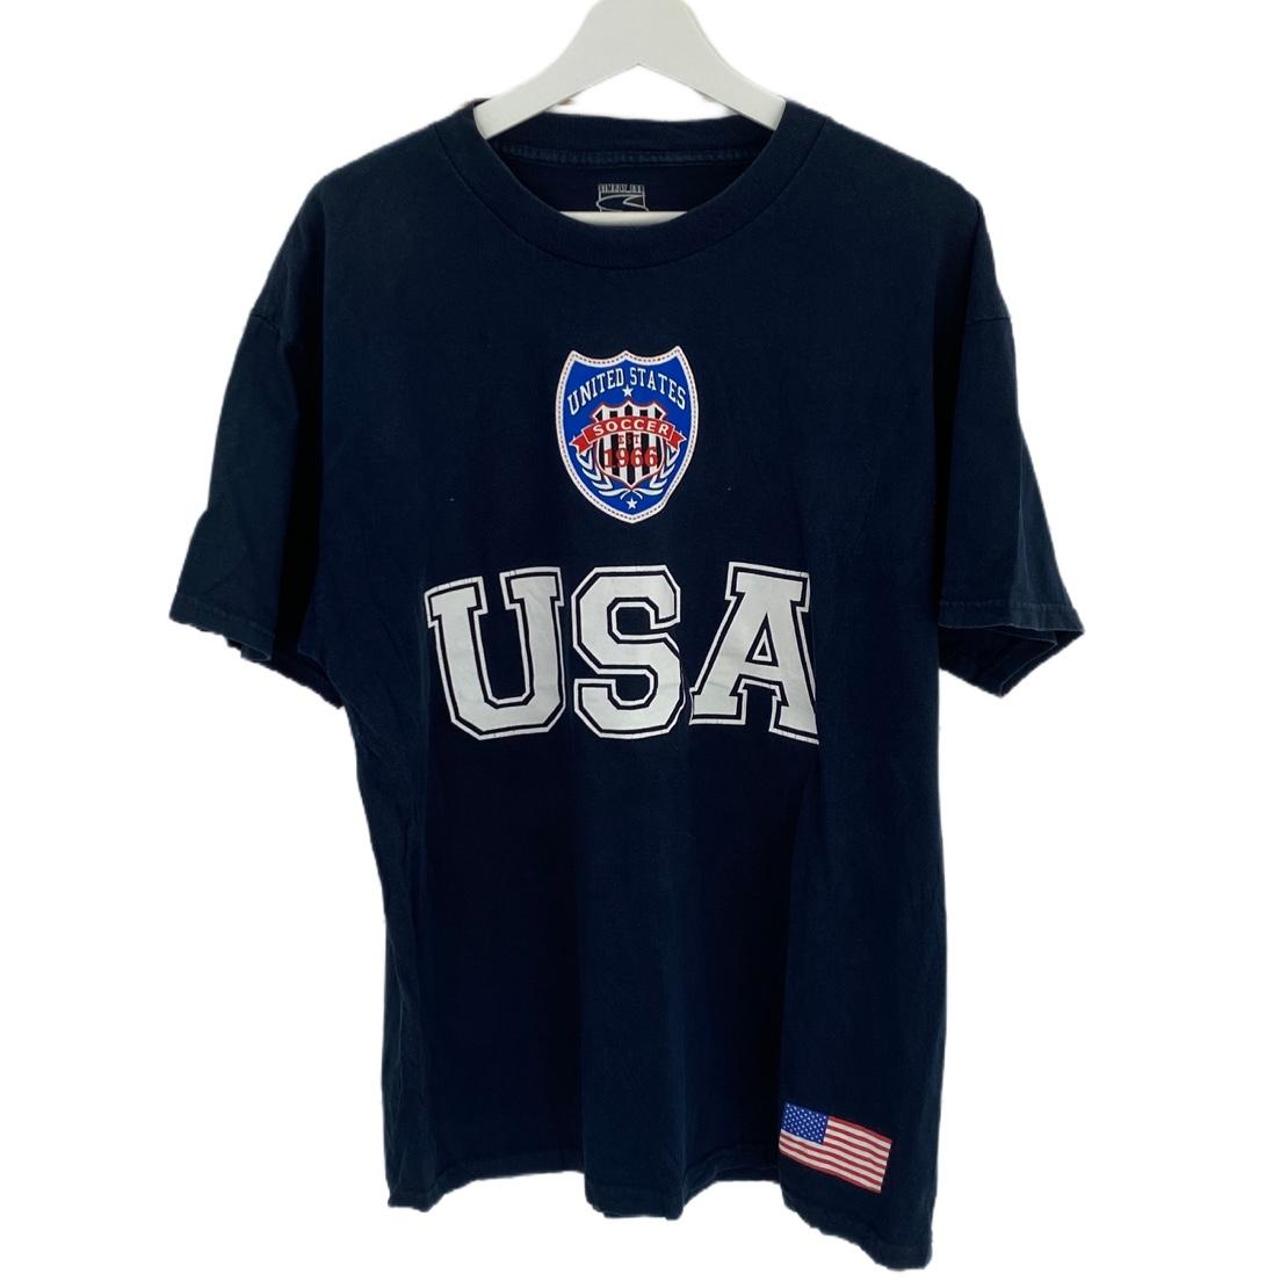 Vintage Tshirt USA Brand: unknown Size:... - Depop